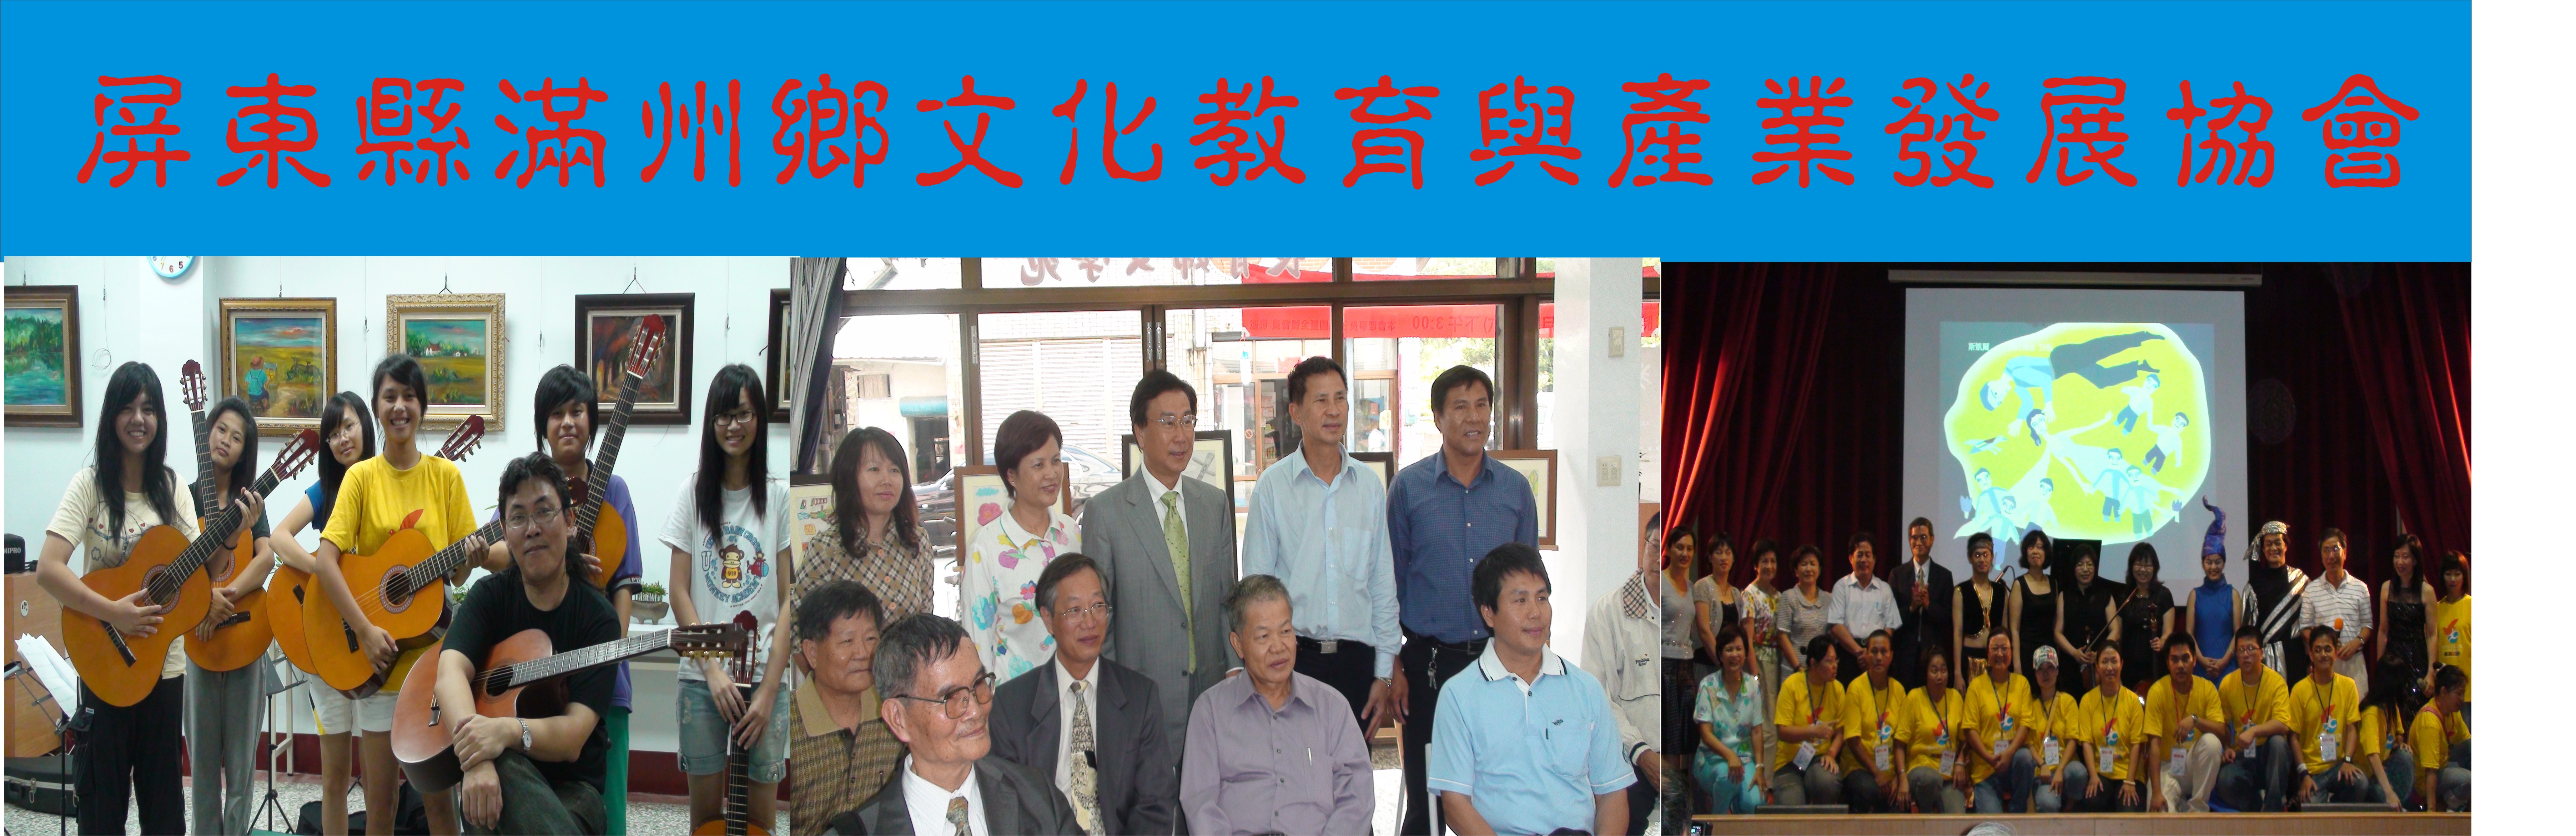 屏東縣滿州鄉文化教育與產業發展協會圖片